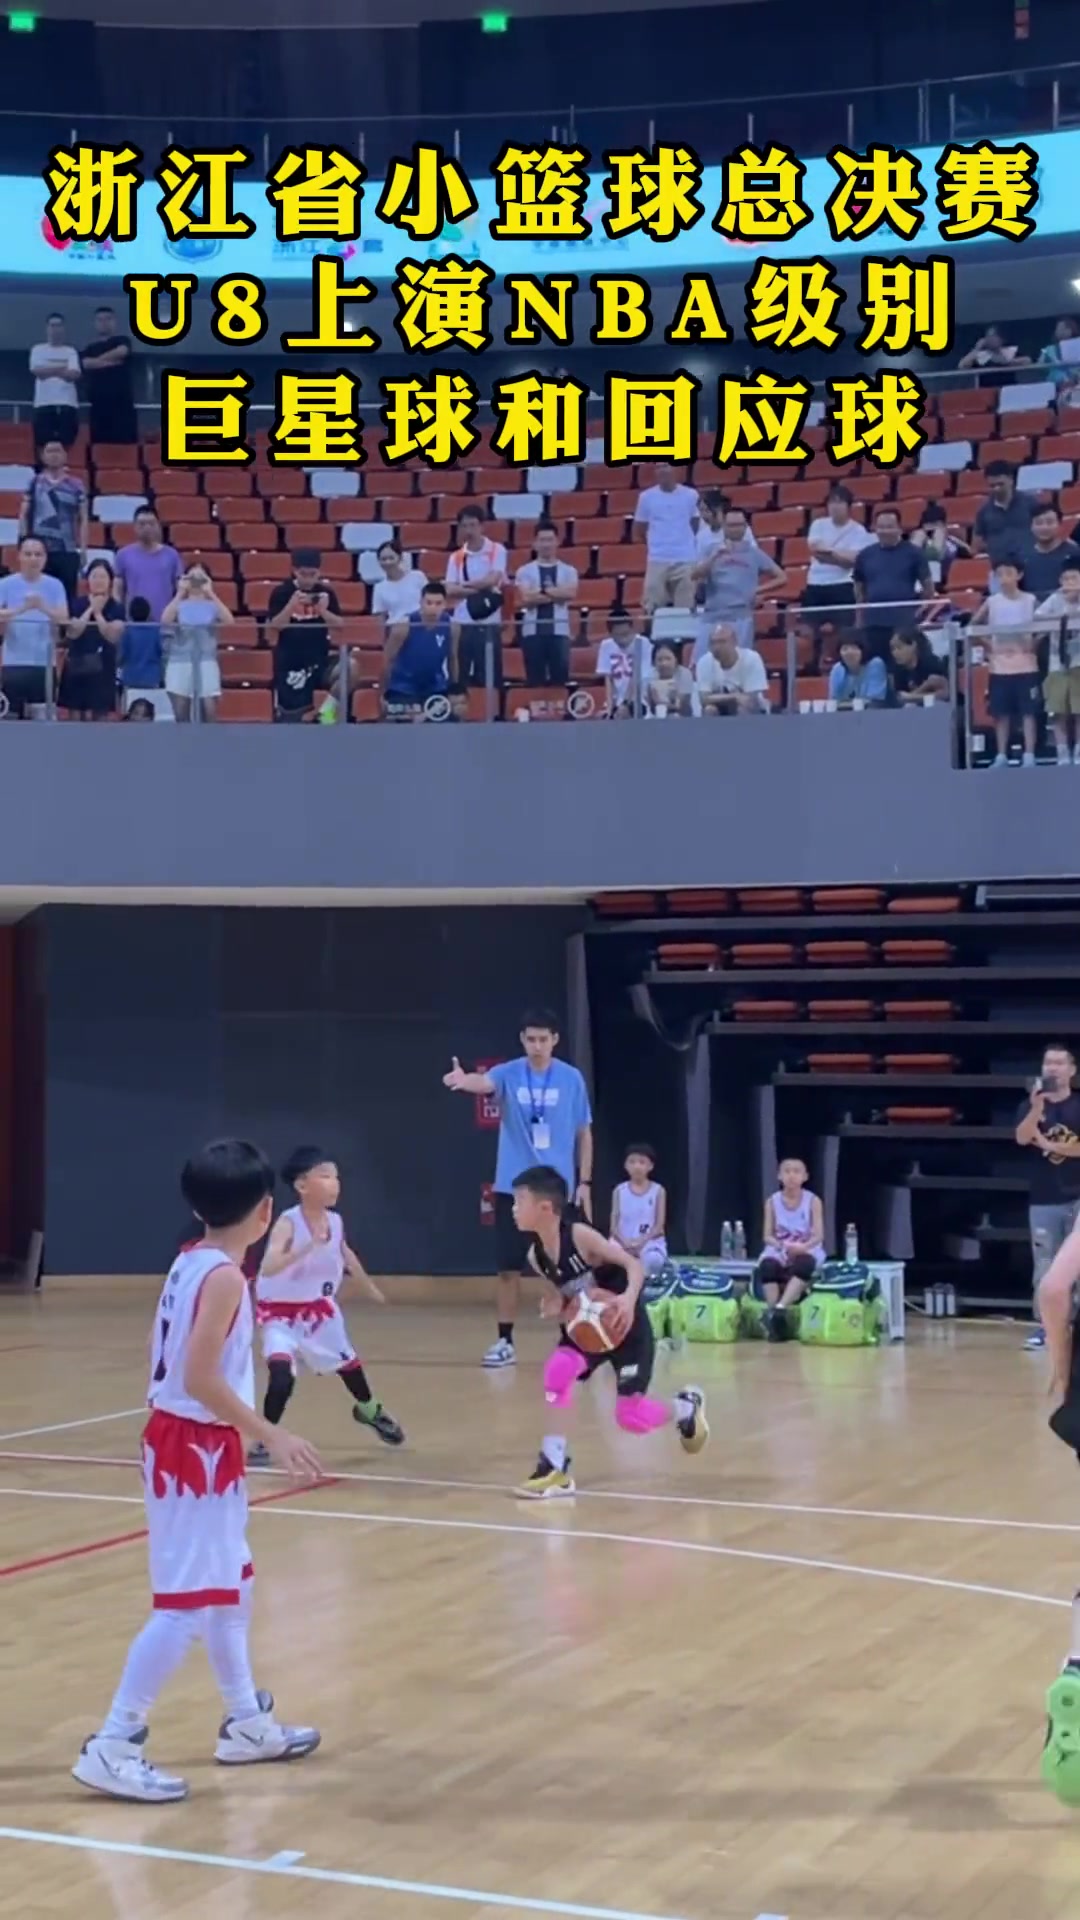 真未来可期！浙江篮球总决赛U8组上演NBA级别巨星球和回应球